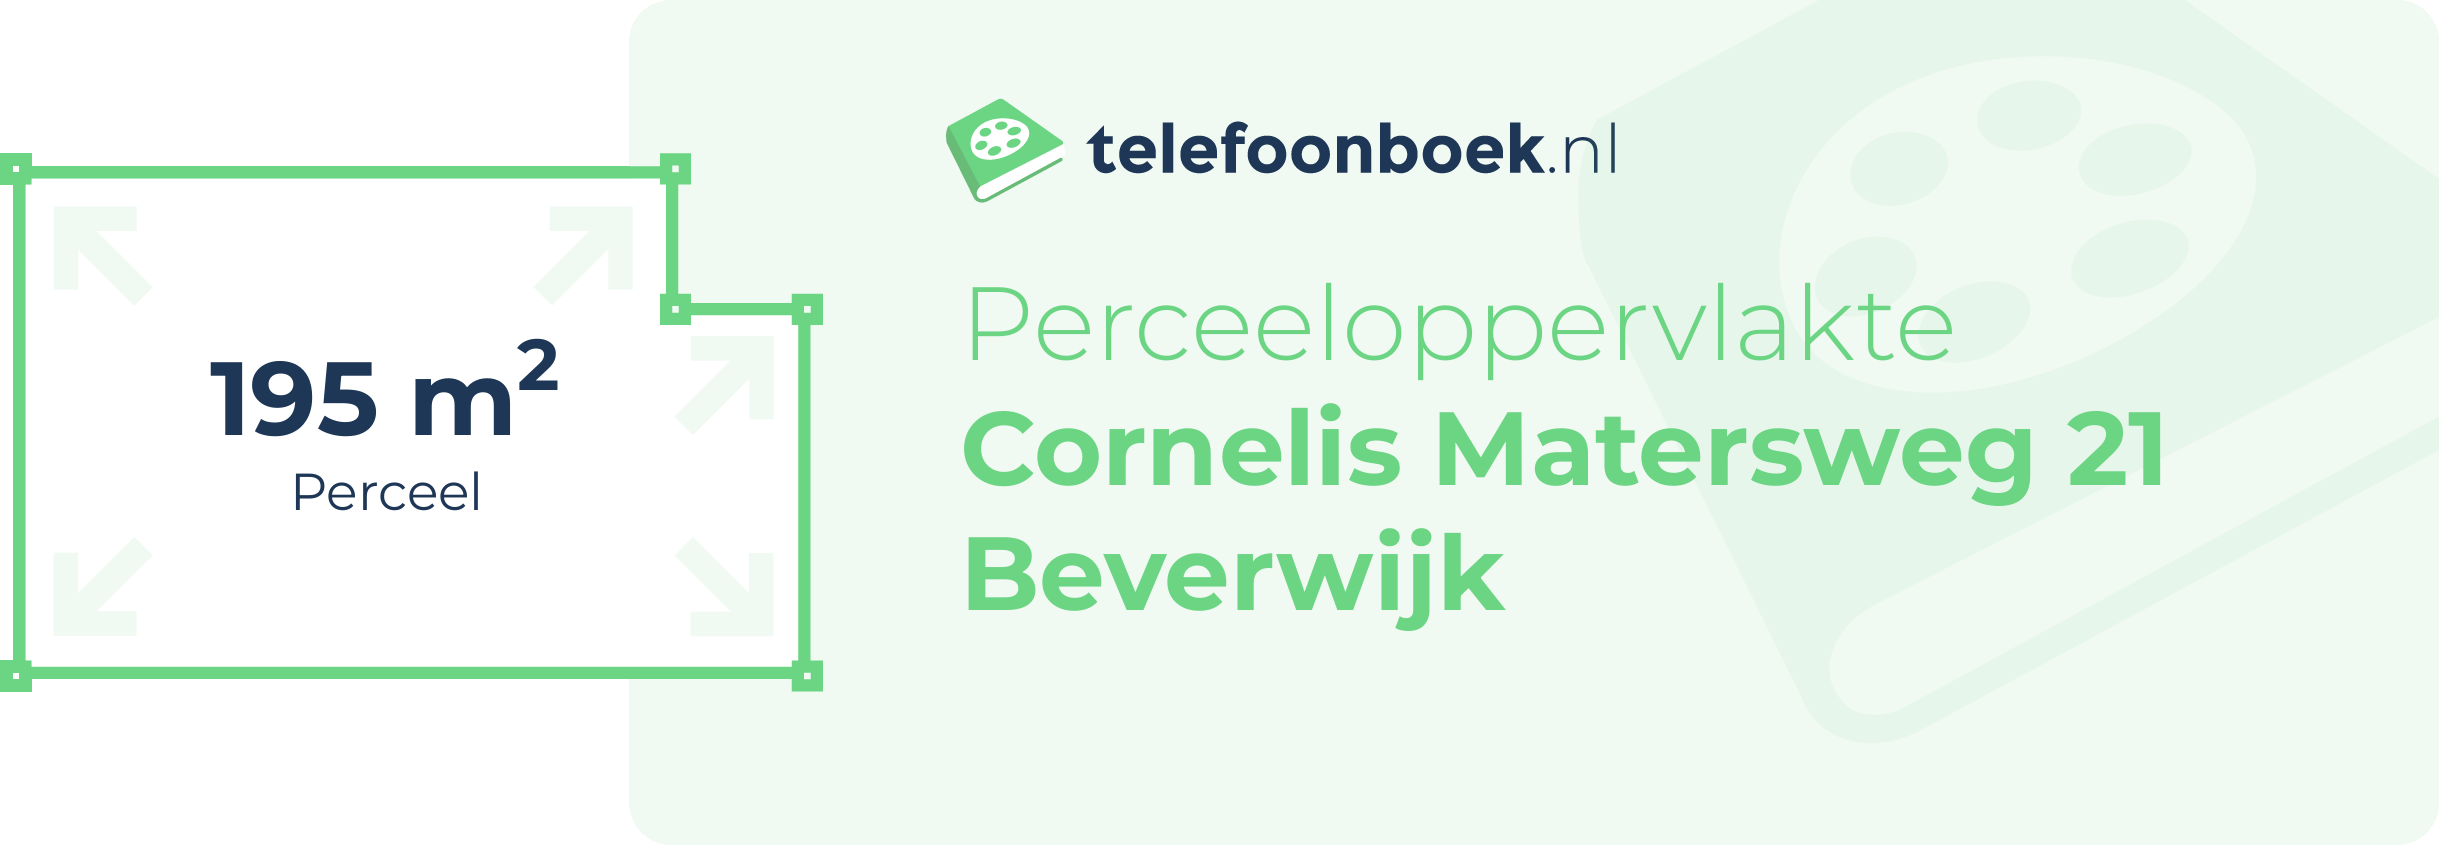 Perceeloppervlakte Cornelis Matersweg 21 Beverwijk